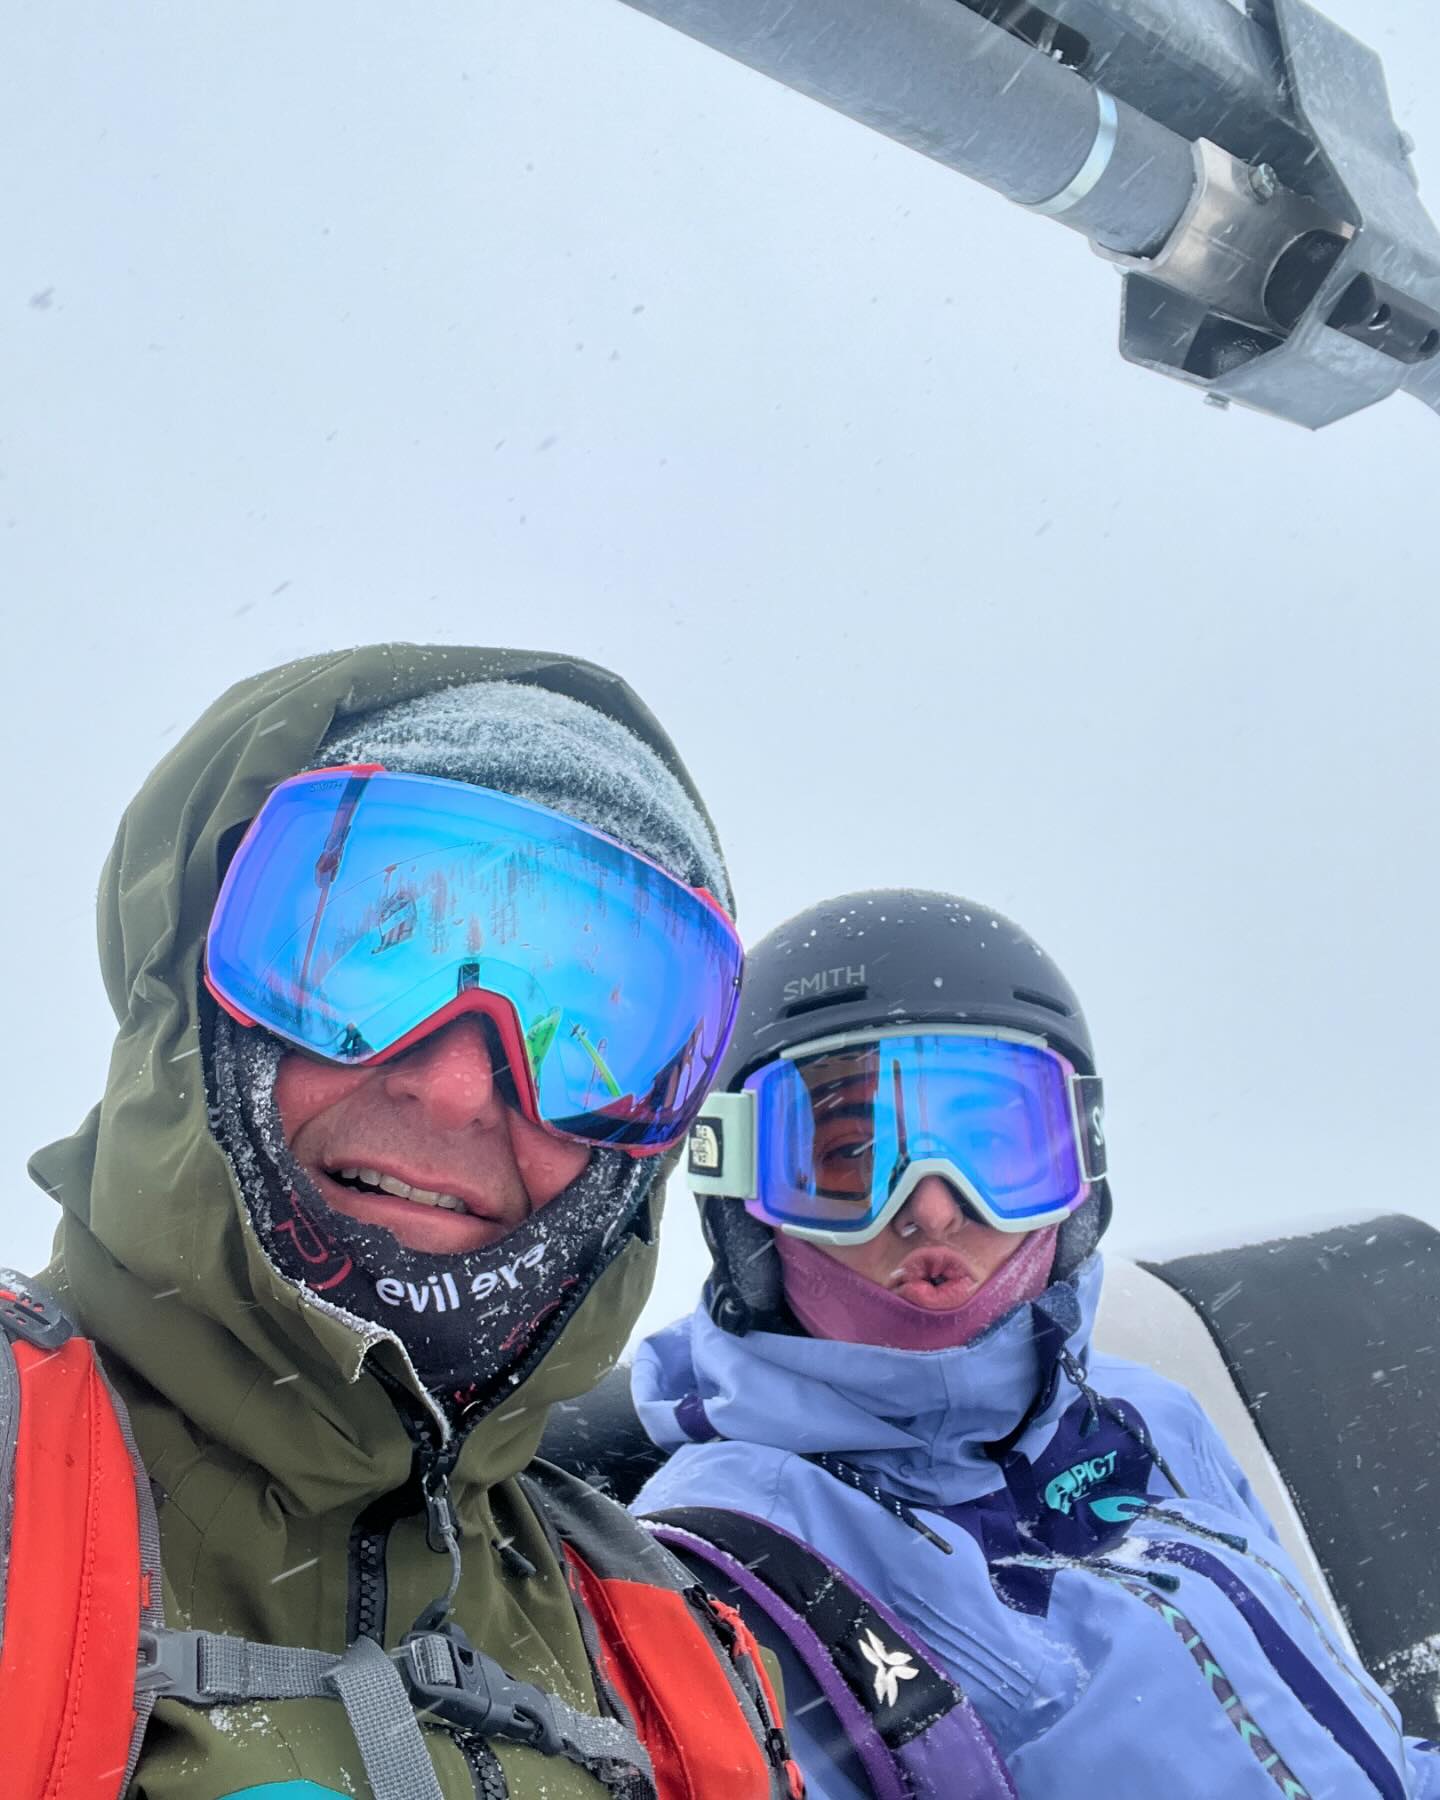 En hiver ❄️ nous profitons du ski, pour recharger les batteries 
@loumasselier ~ la technicienne 
@denis_chaussin ~ opticien 
.
#optic #optique #opticien #optician #chamonixmontblanc🇫🇷 #lunettes #masquesdeski #goggles #smithoptics #eyewear #eyeglasses